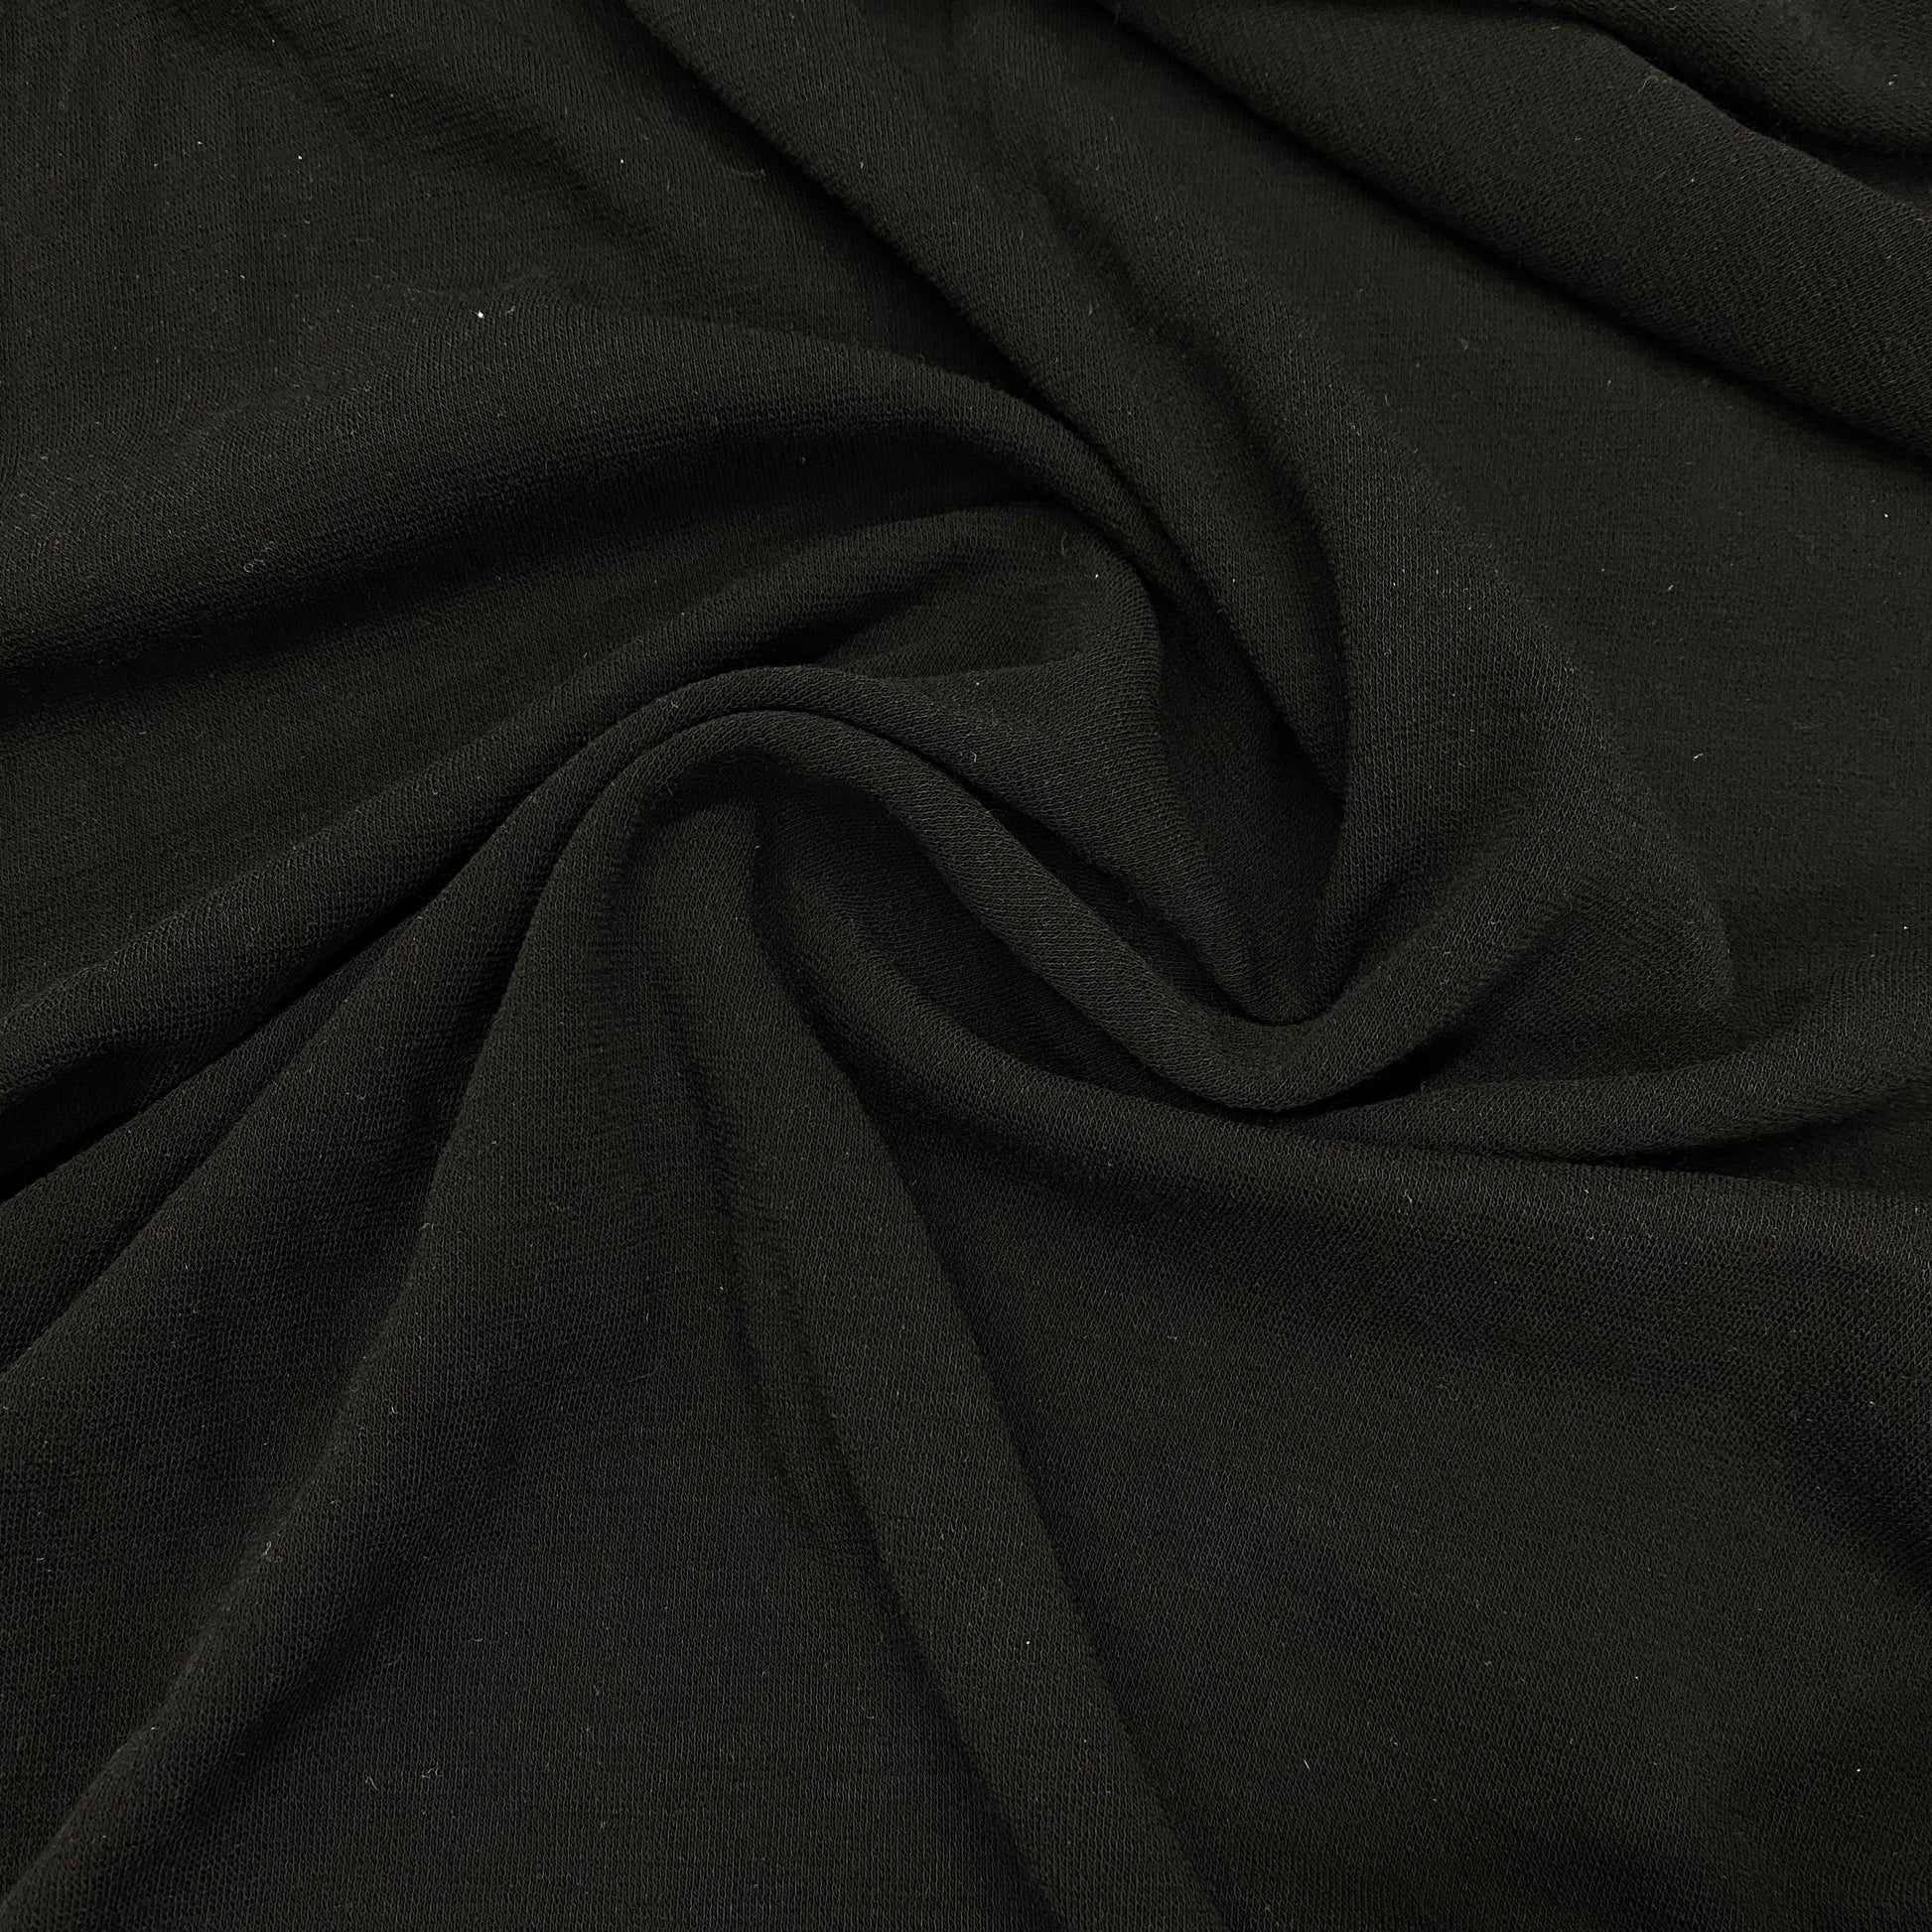 Black 100% Merino Wool Interlock Fabric - 235 GSM - Washable - Nature's Fabrics